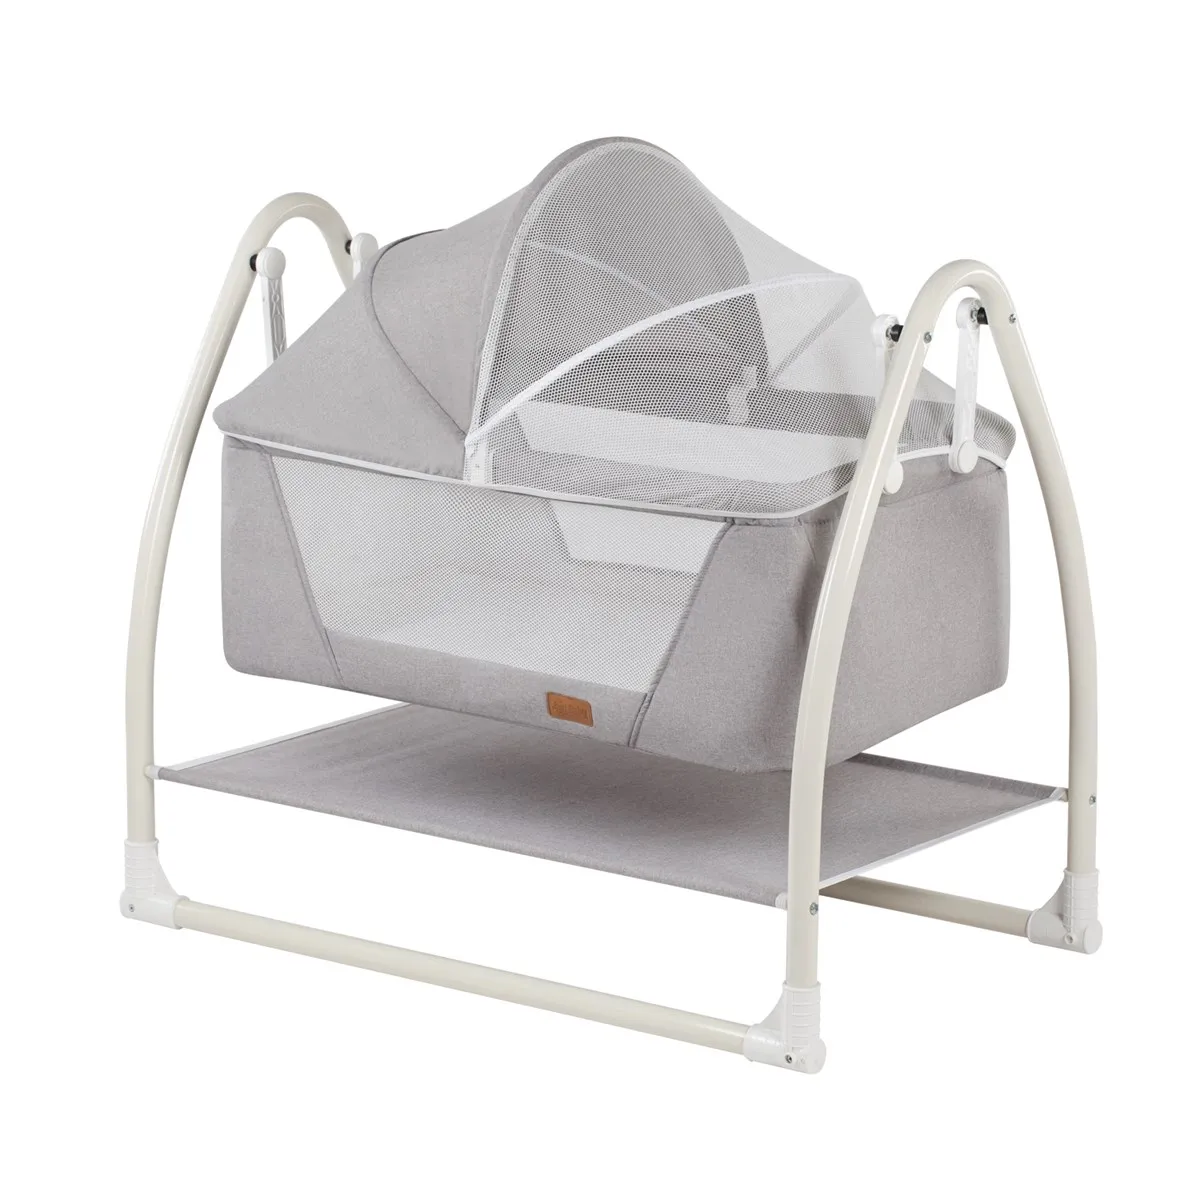 Jaju Baby, Portable Rocking Gray Cradle, Easy Rocking Cradle for Babies, Comfortable for Newborns